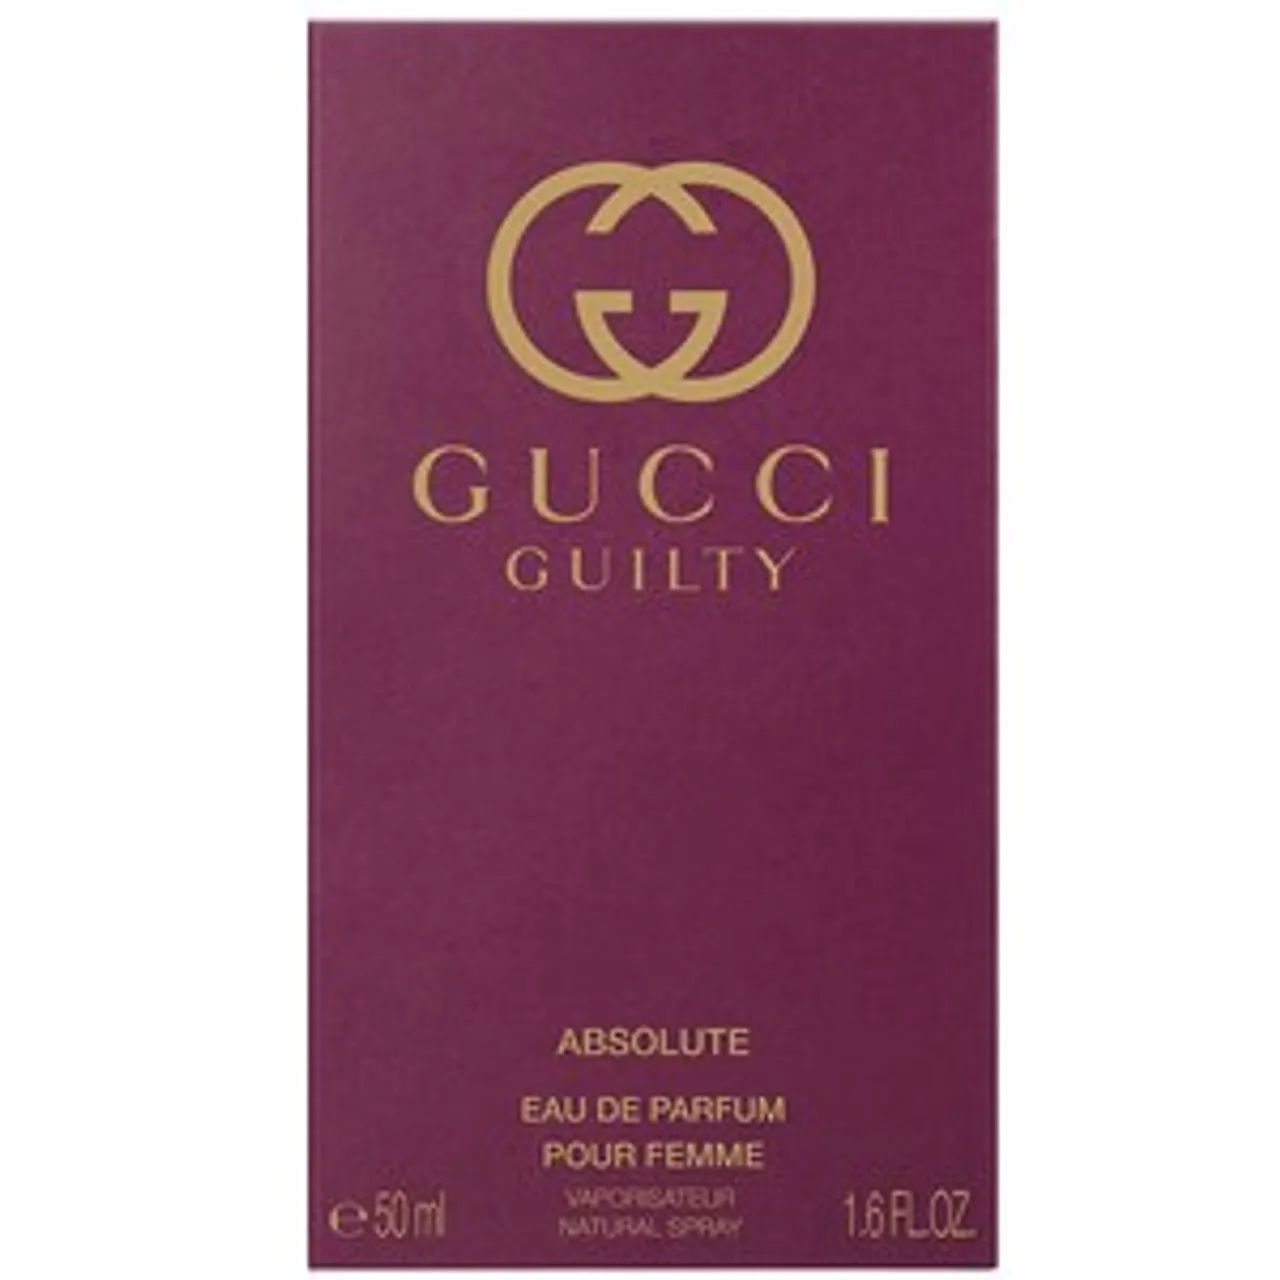 Gucci Guilty Absolute Pour Femme EAU DE PARFUM 50 ML